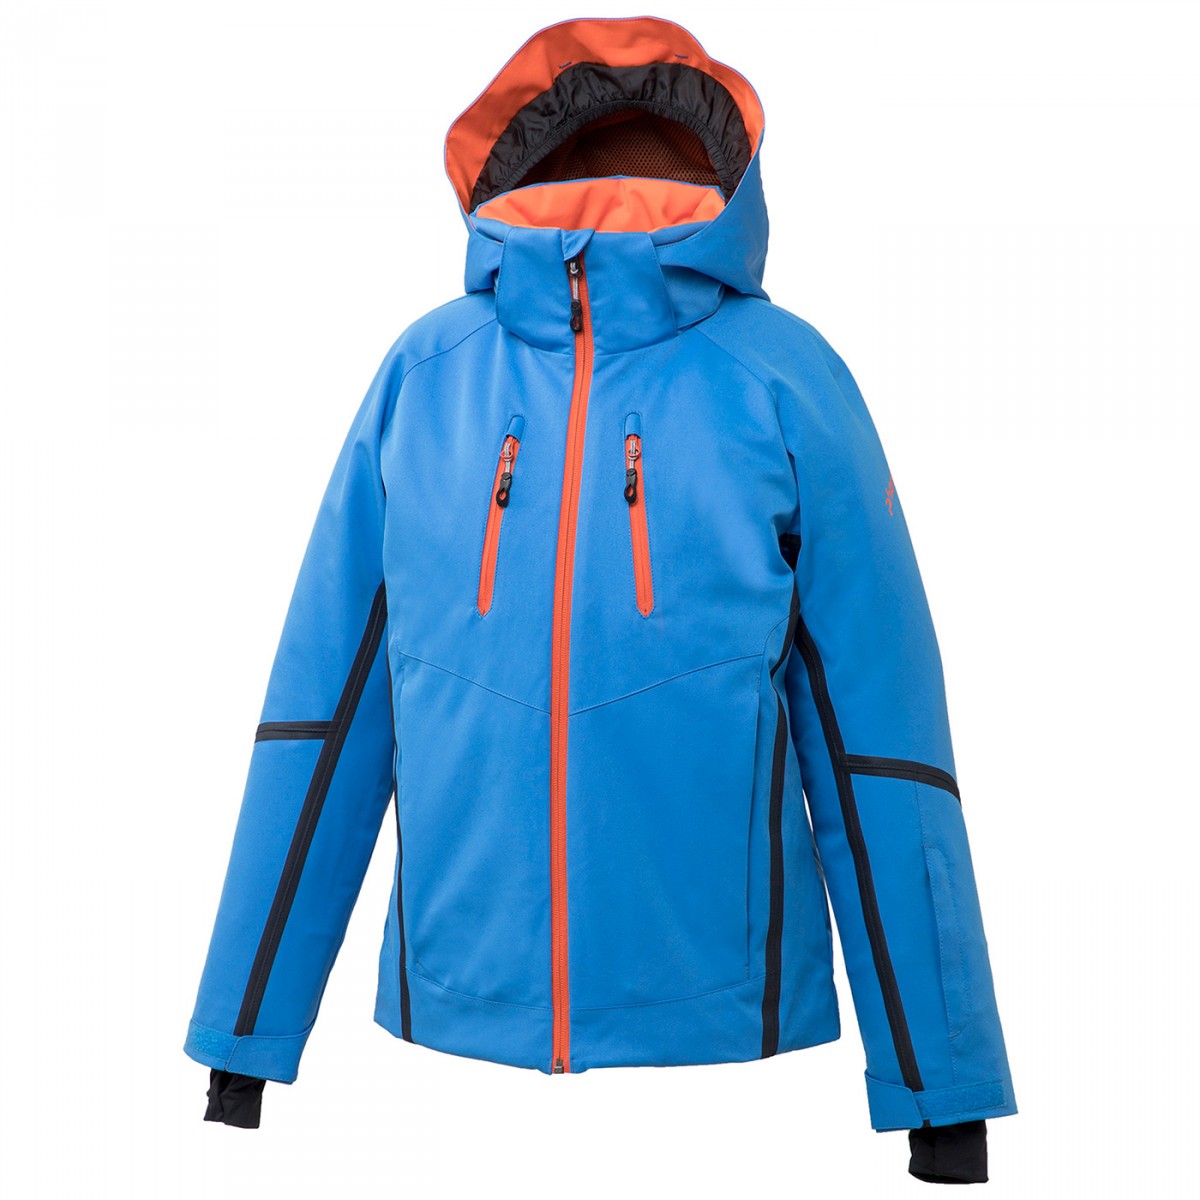 Ski jacket Phenix Delta Junior - Ski clothing | EN